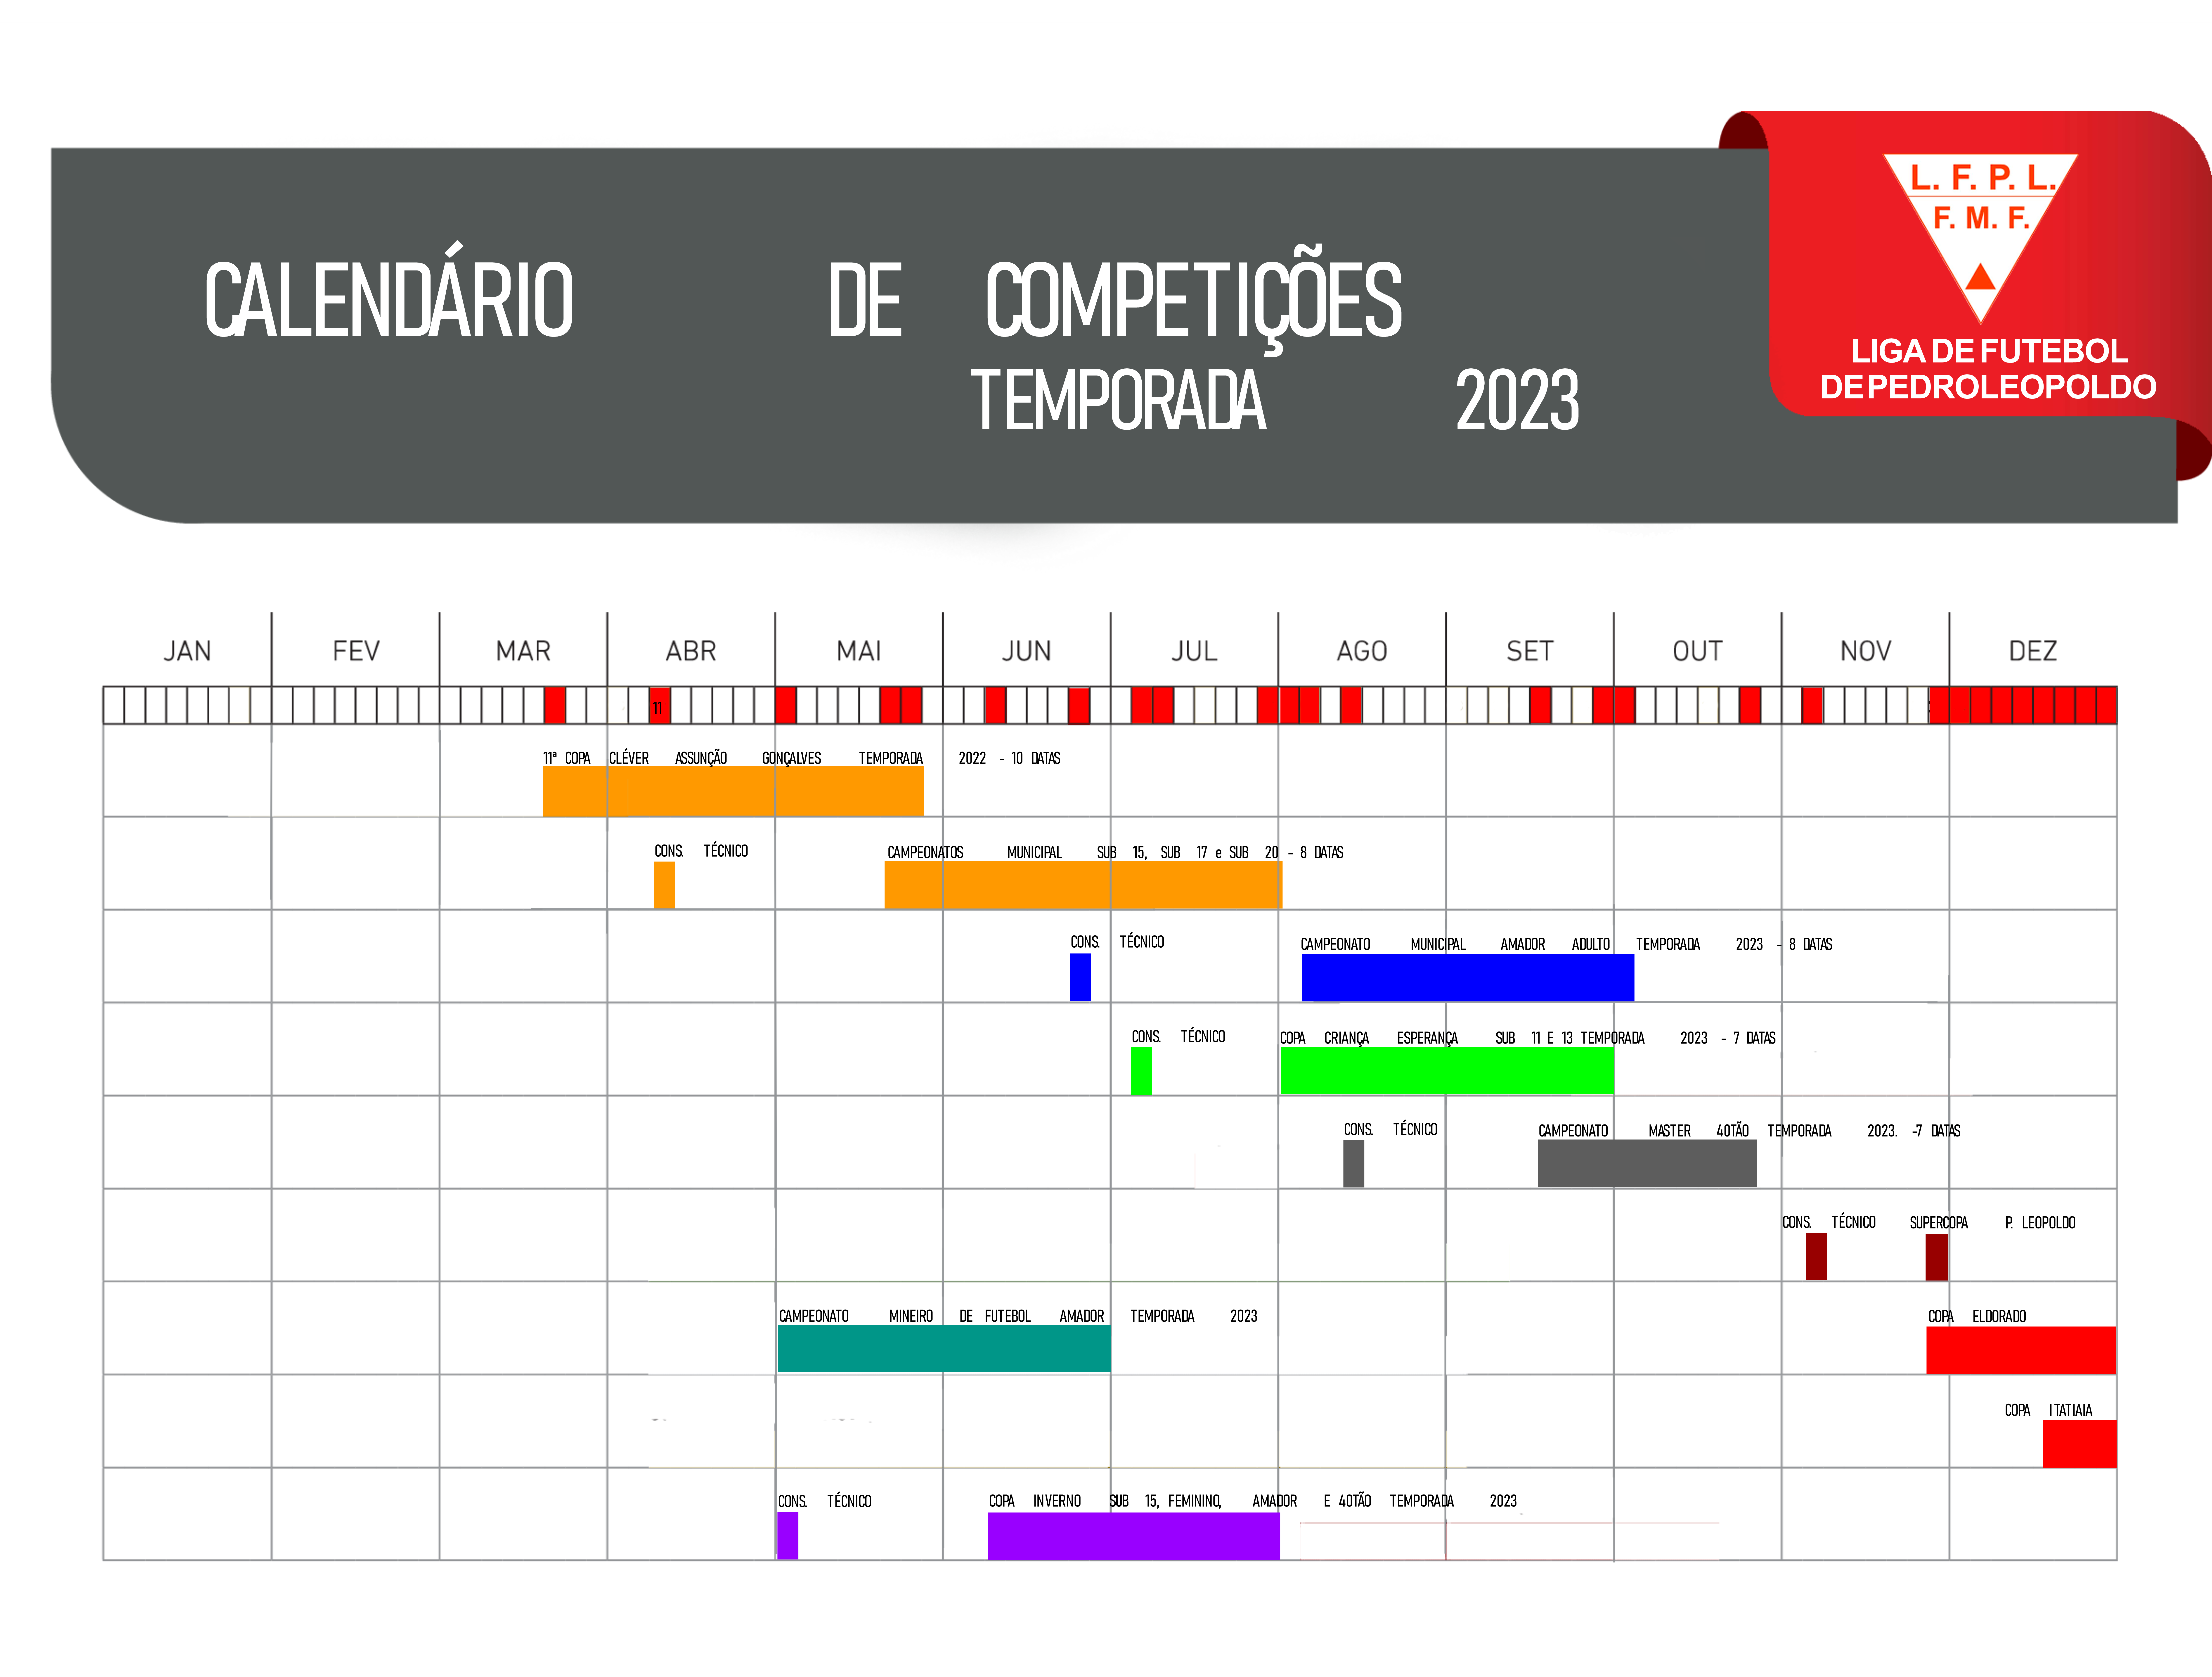 11/02/2023 – 1o Torneio por Equipes de Pedro Leopoldo – FMX